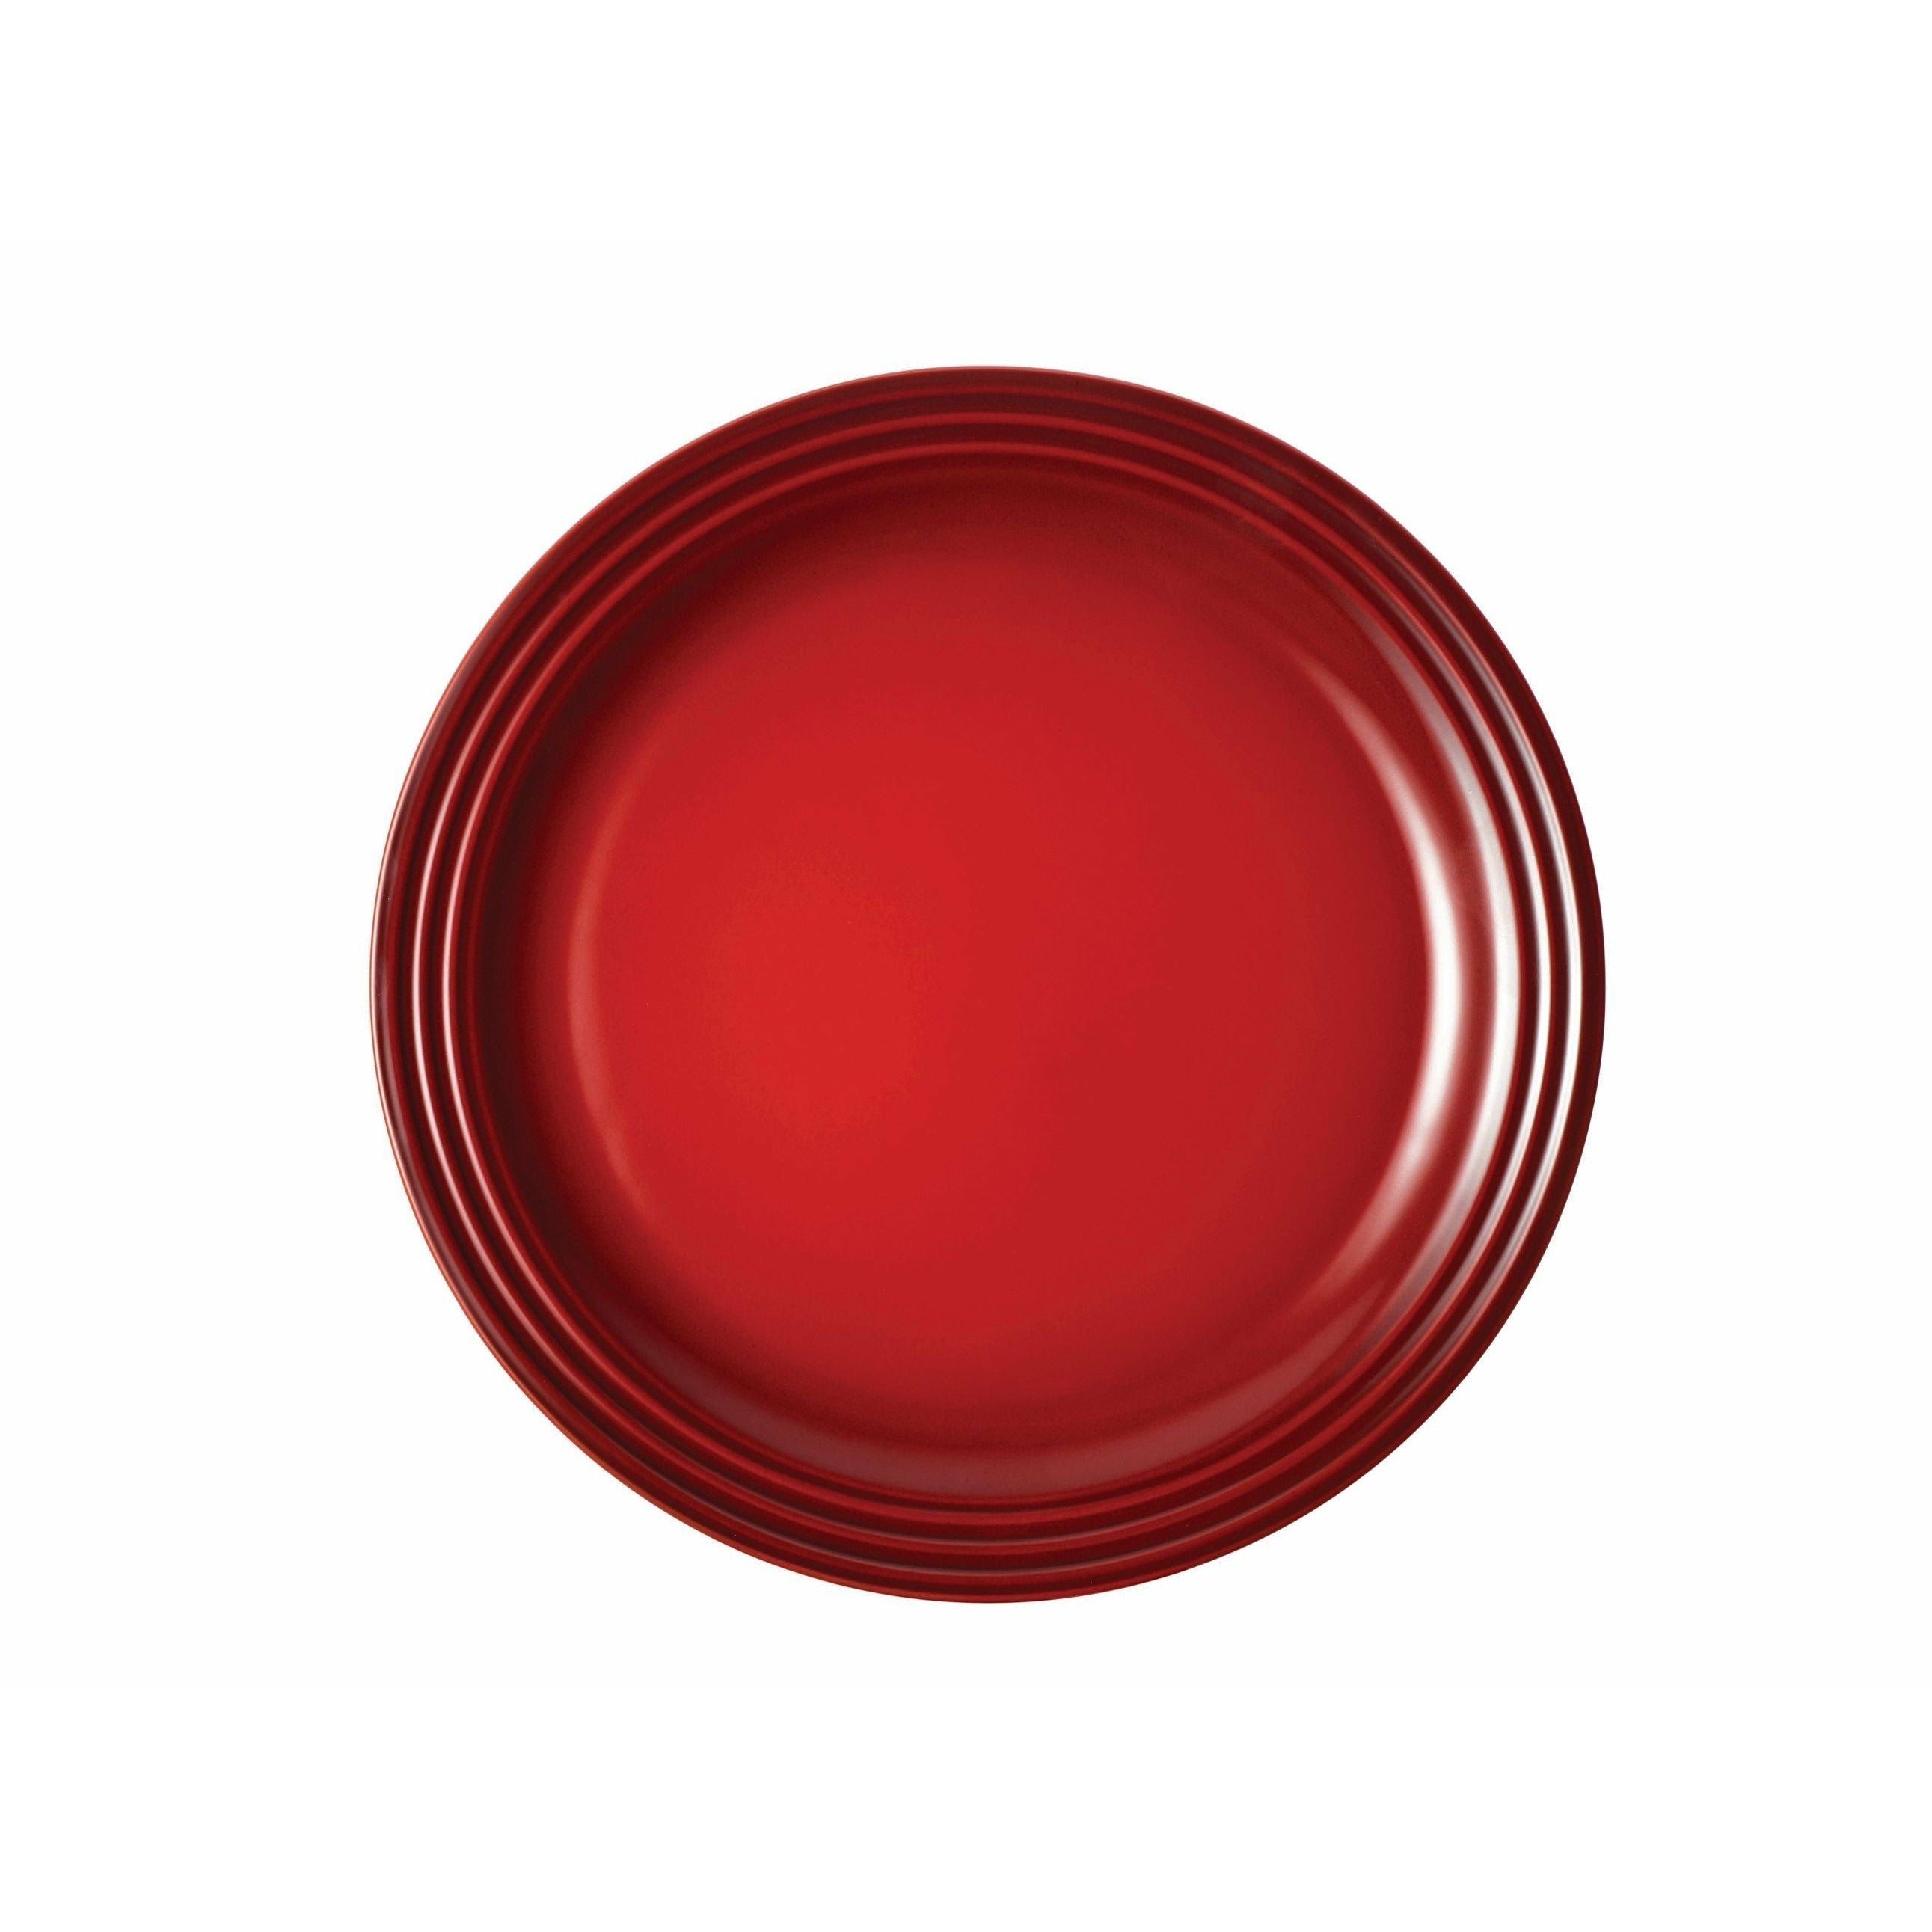 Le Creuset Signature Feieteller 27 cm, Cherry Red